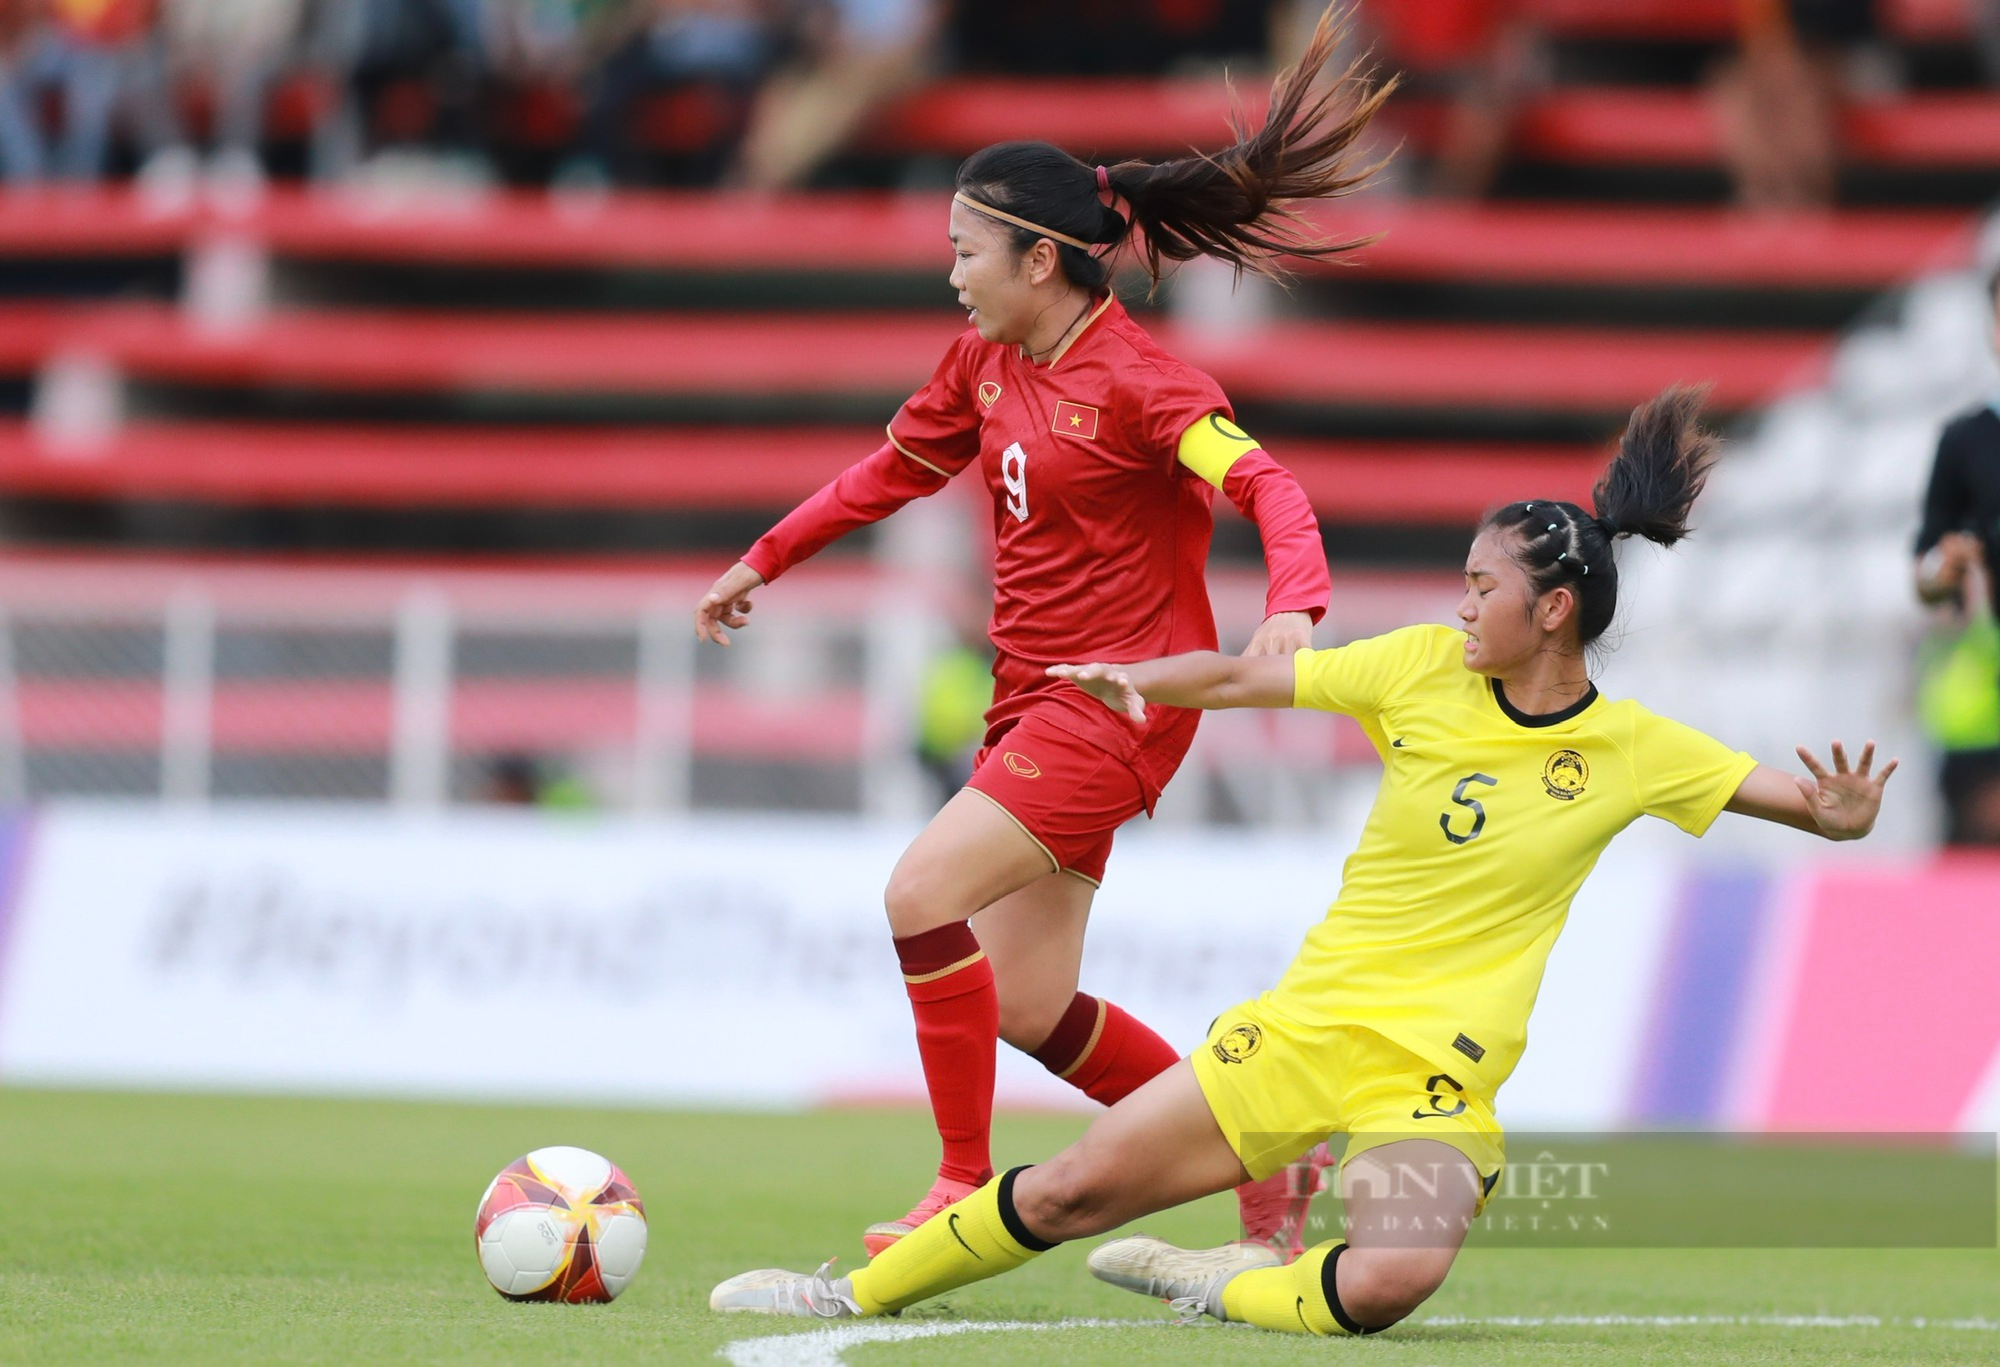 Huỳnh Như ghi bàn may mắn, ĐT nữ Việt Nam nhẹ nhàng đánh bại Malaysia - Ảnh 2.